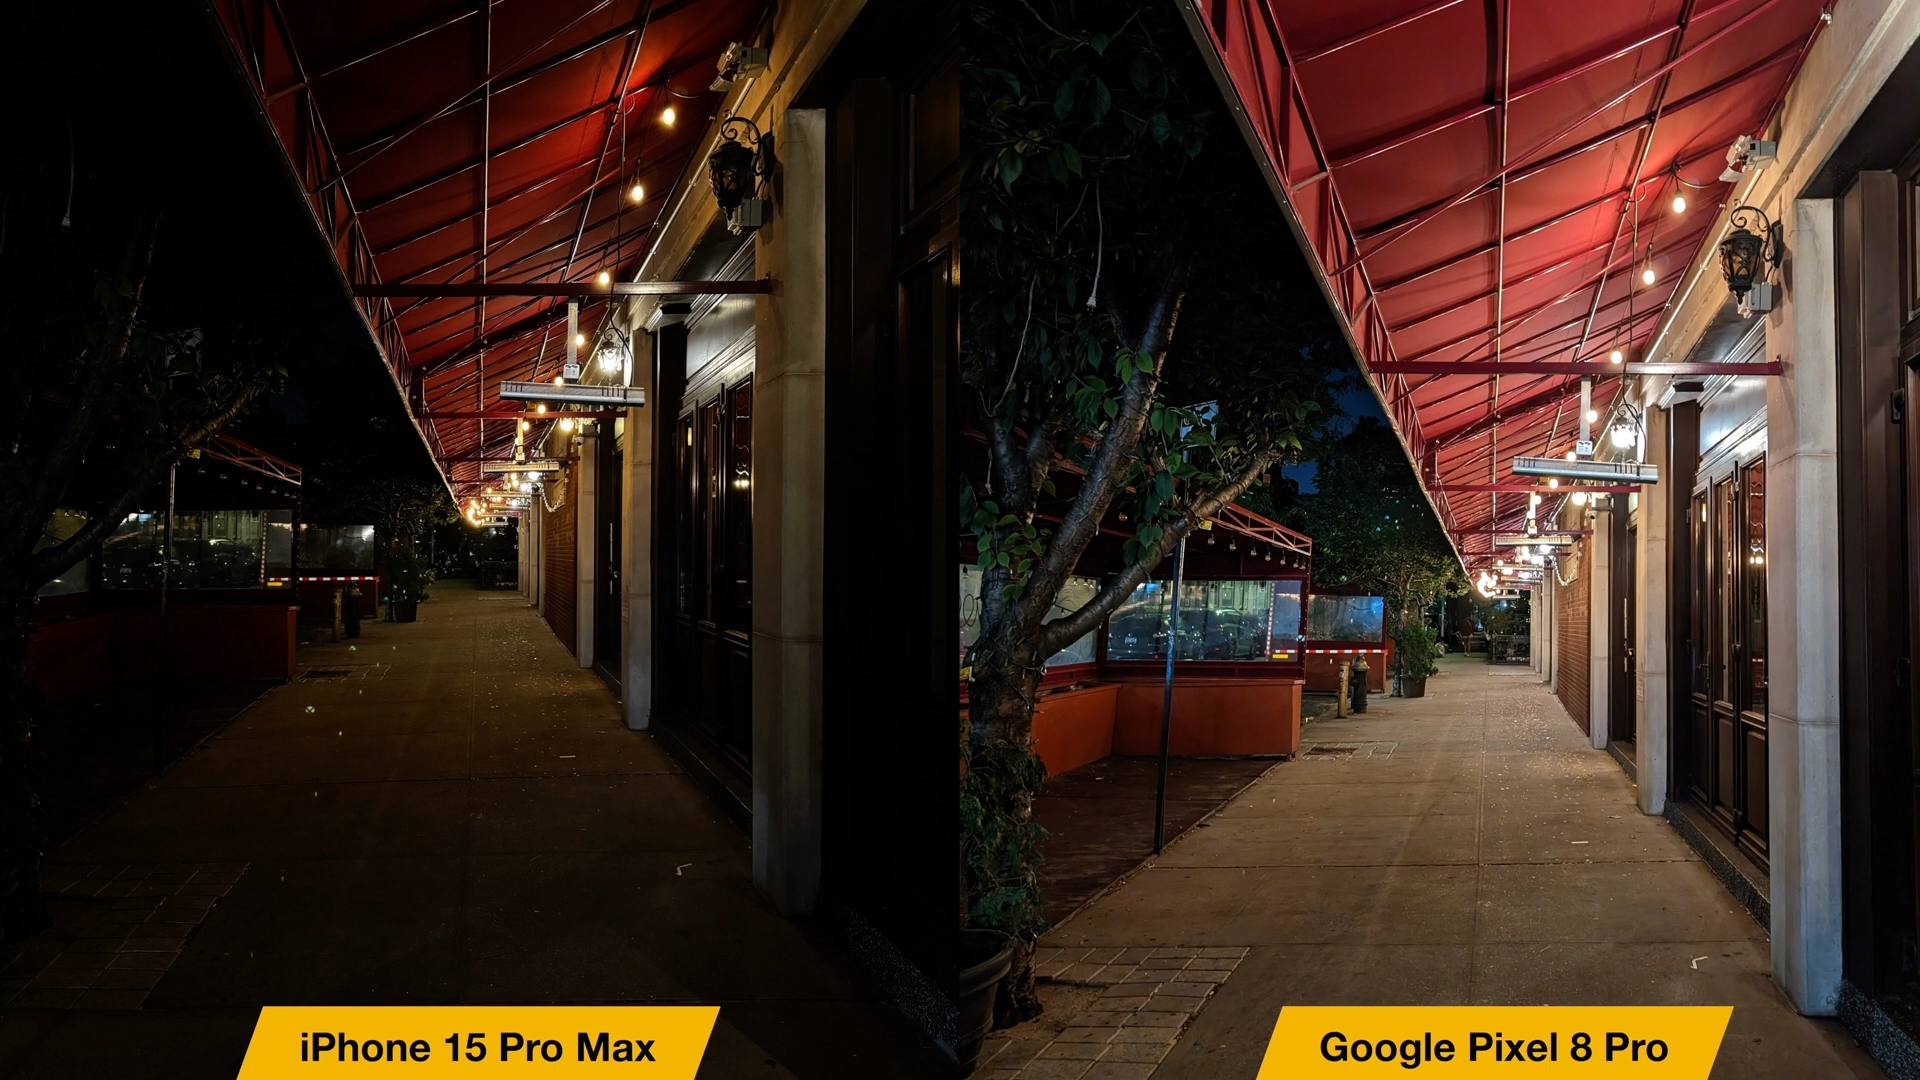 Từ iPhoneIslam.com, hai bức ảnh chụp một con phố có hai ngọn đèn, so sánh giữa iPhone 15 Pro Max và Google Pixel 8 Pro.